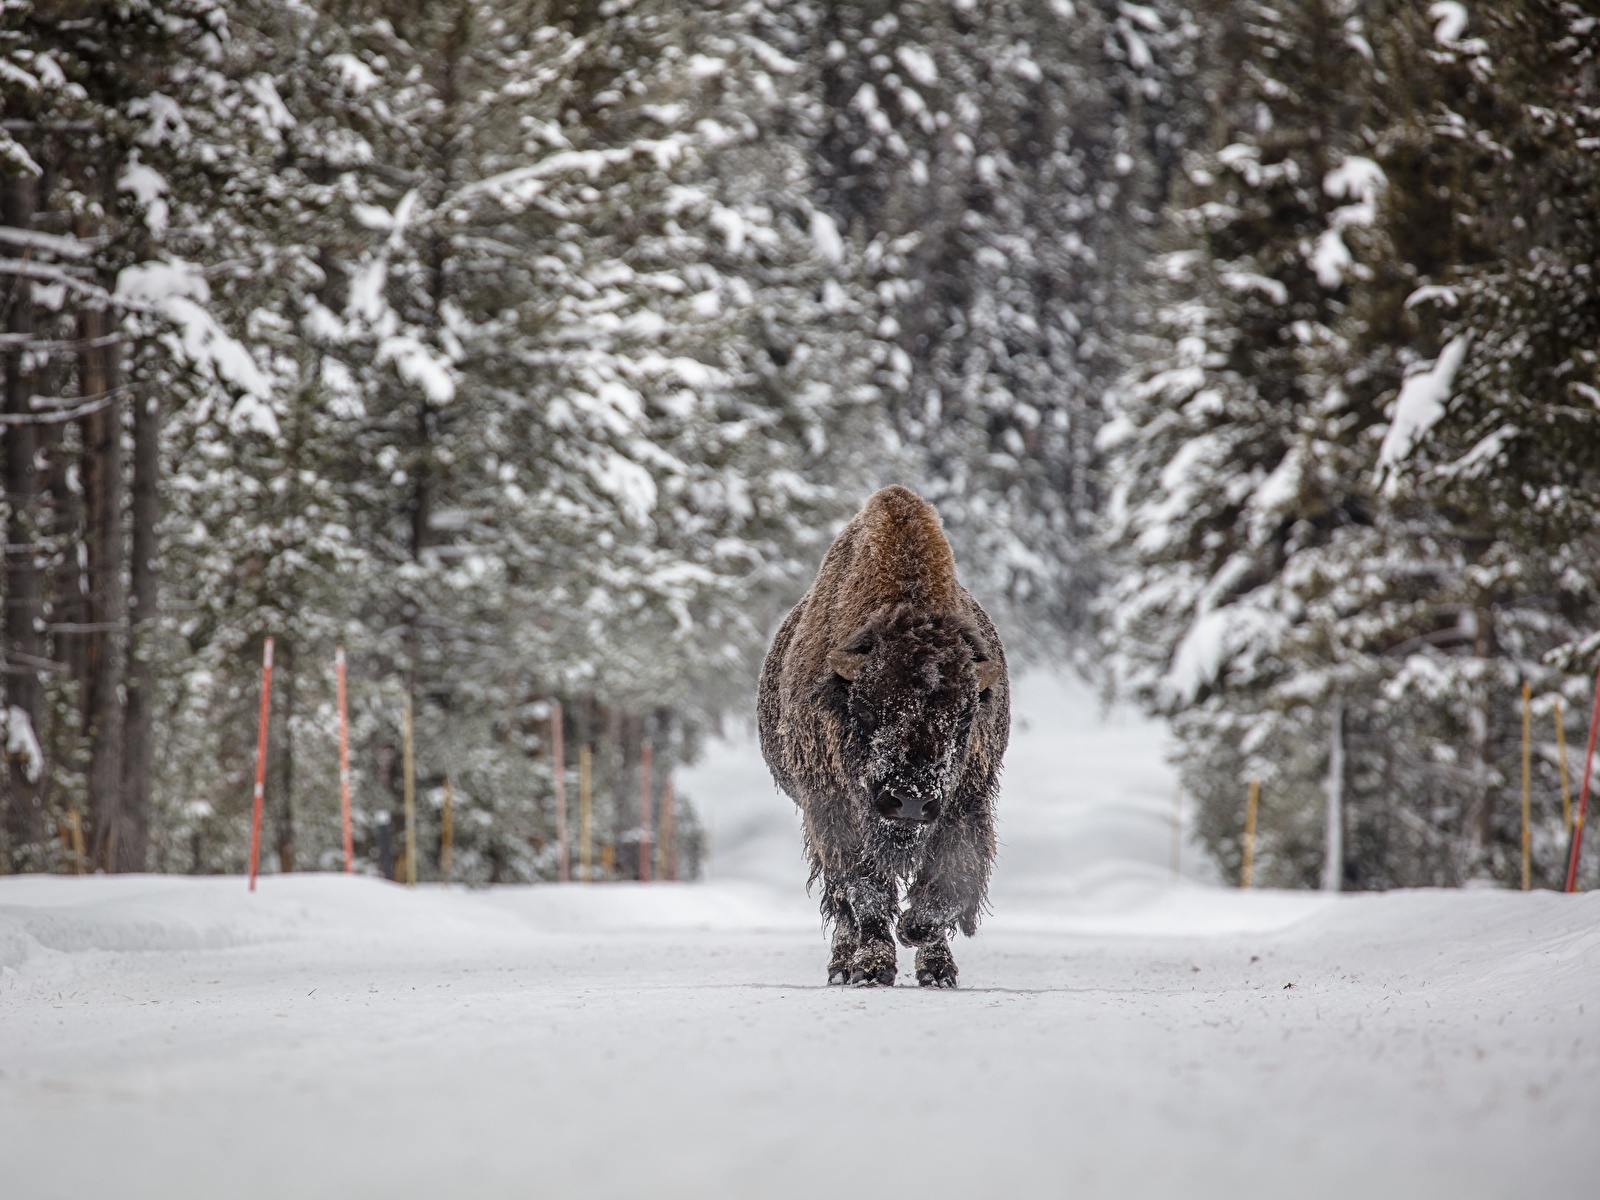 Llegó el invierno Forests_Winter_American_bison_Snow_557618_1600x1200